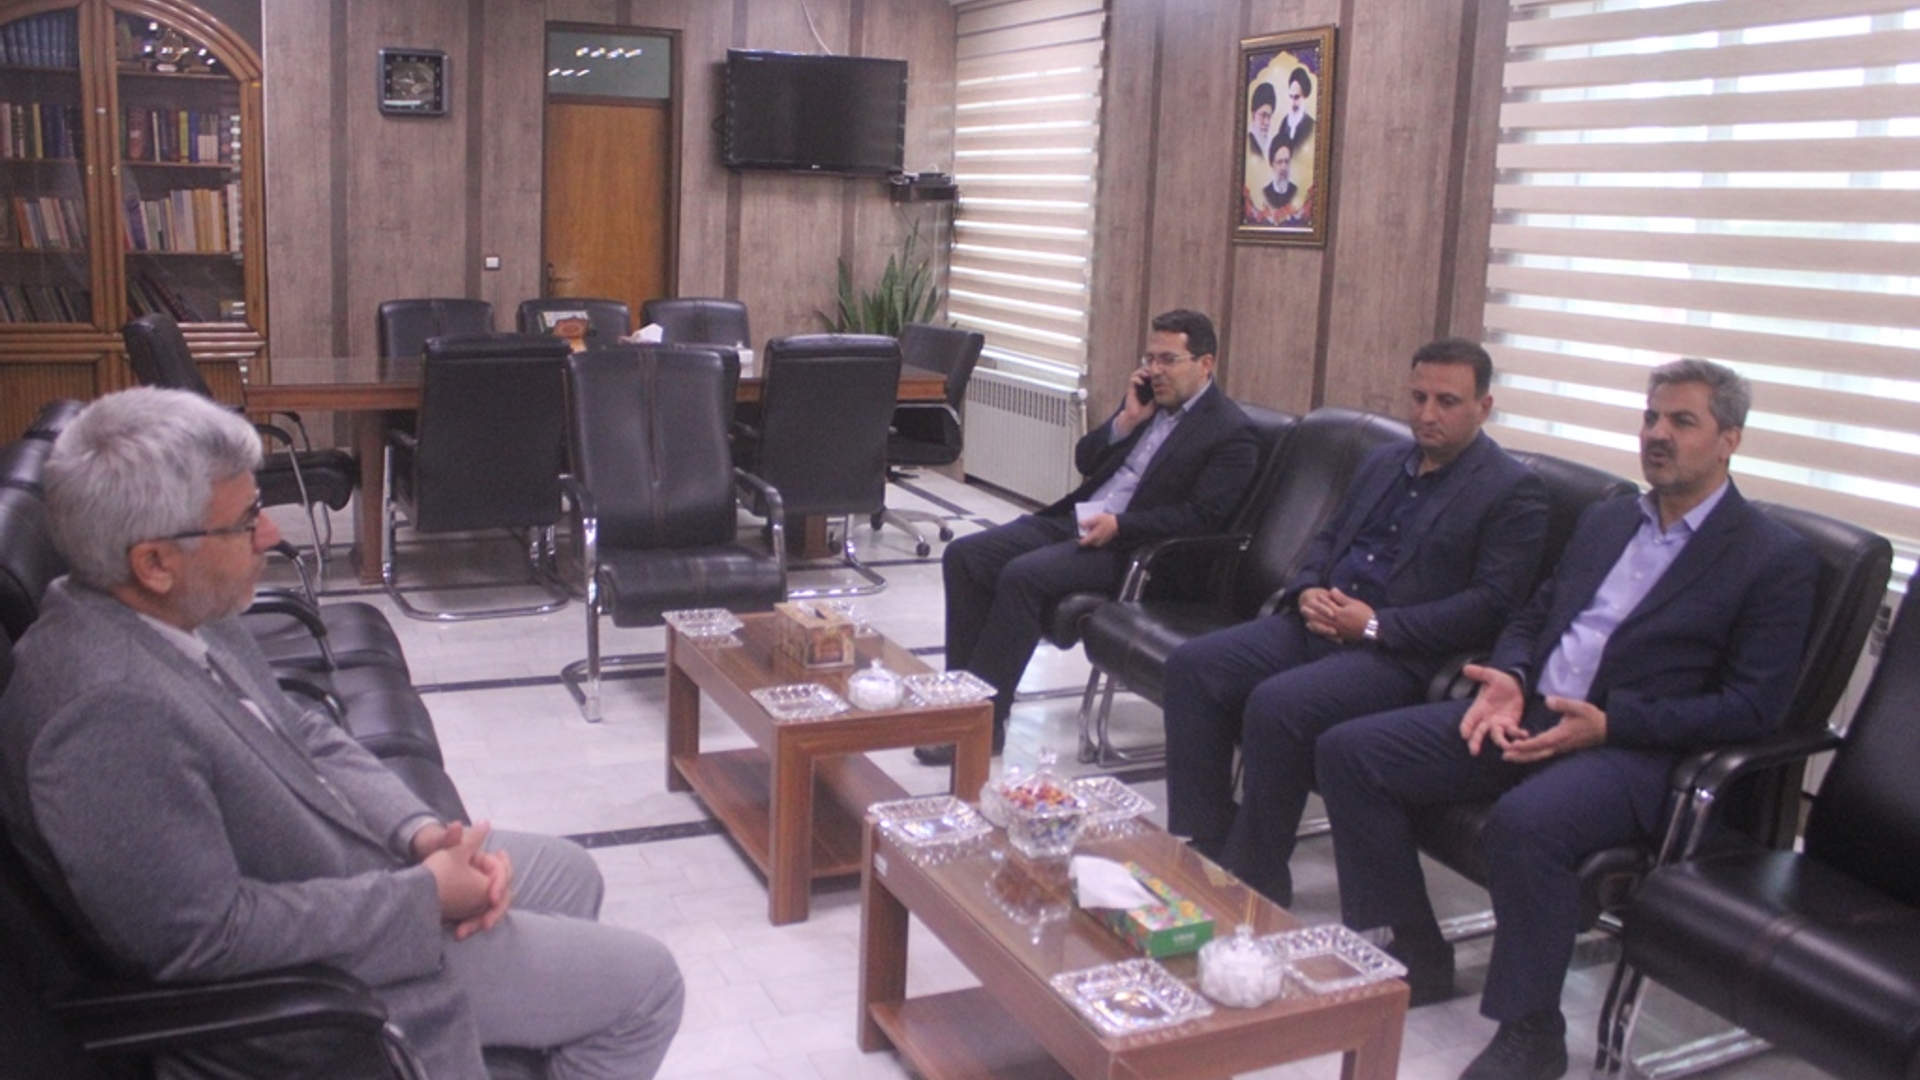 نشست فرماندار شهرستان خمین با مدیر عامل شرکت توزیع برق استان برگزار شد